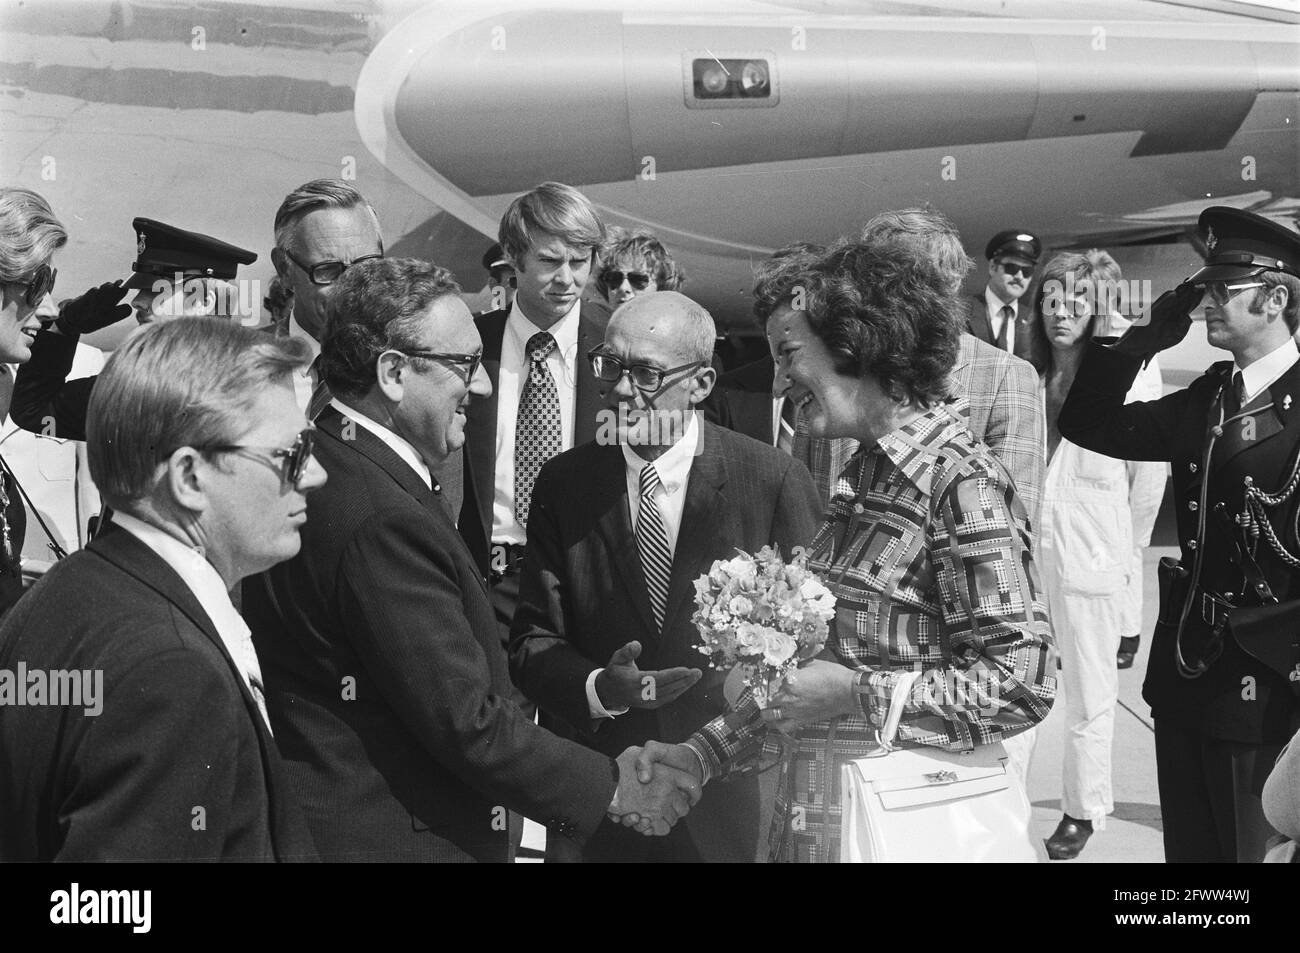 US-Außenminister Dr. Henry Kissinger besucht die Niederlande; Ankunft in Schiphol, Kissinger mit Frau Nancy, 11. August 1976, Minister, 20. Jahrhundert Presseagentur Foto, Nachrichten zu erinnern, Dokumentarfilm, historische Fotografie 1945-1990, visuelle Geschichten, Menschliche Geschichte des zwanzigsten Jahrhunderts, Momente in der Zeit festzuhalten Stockfoto